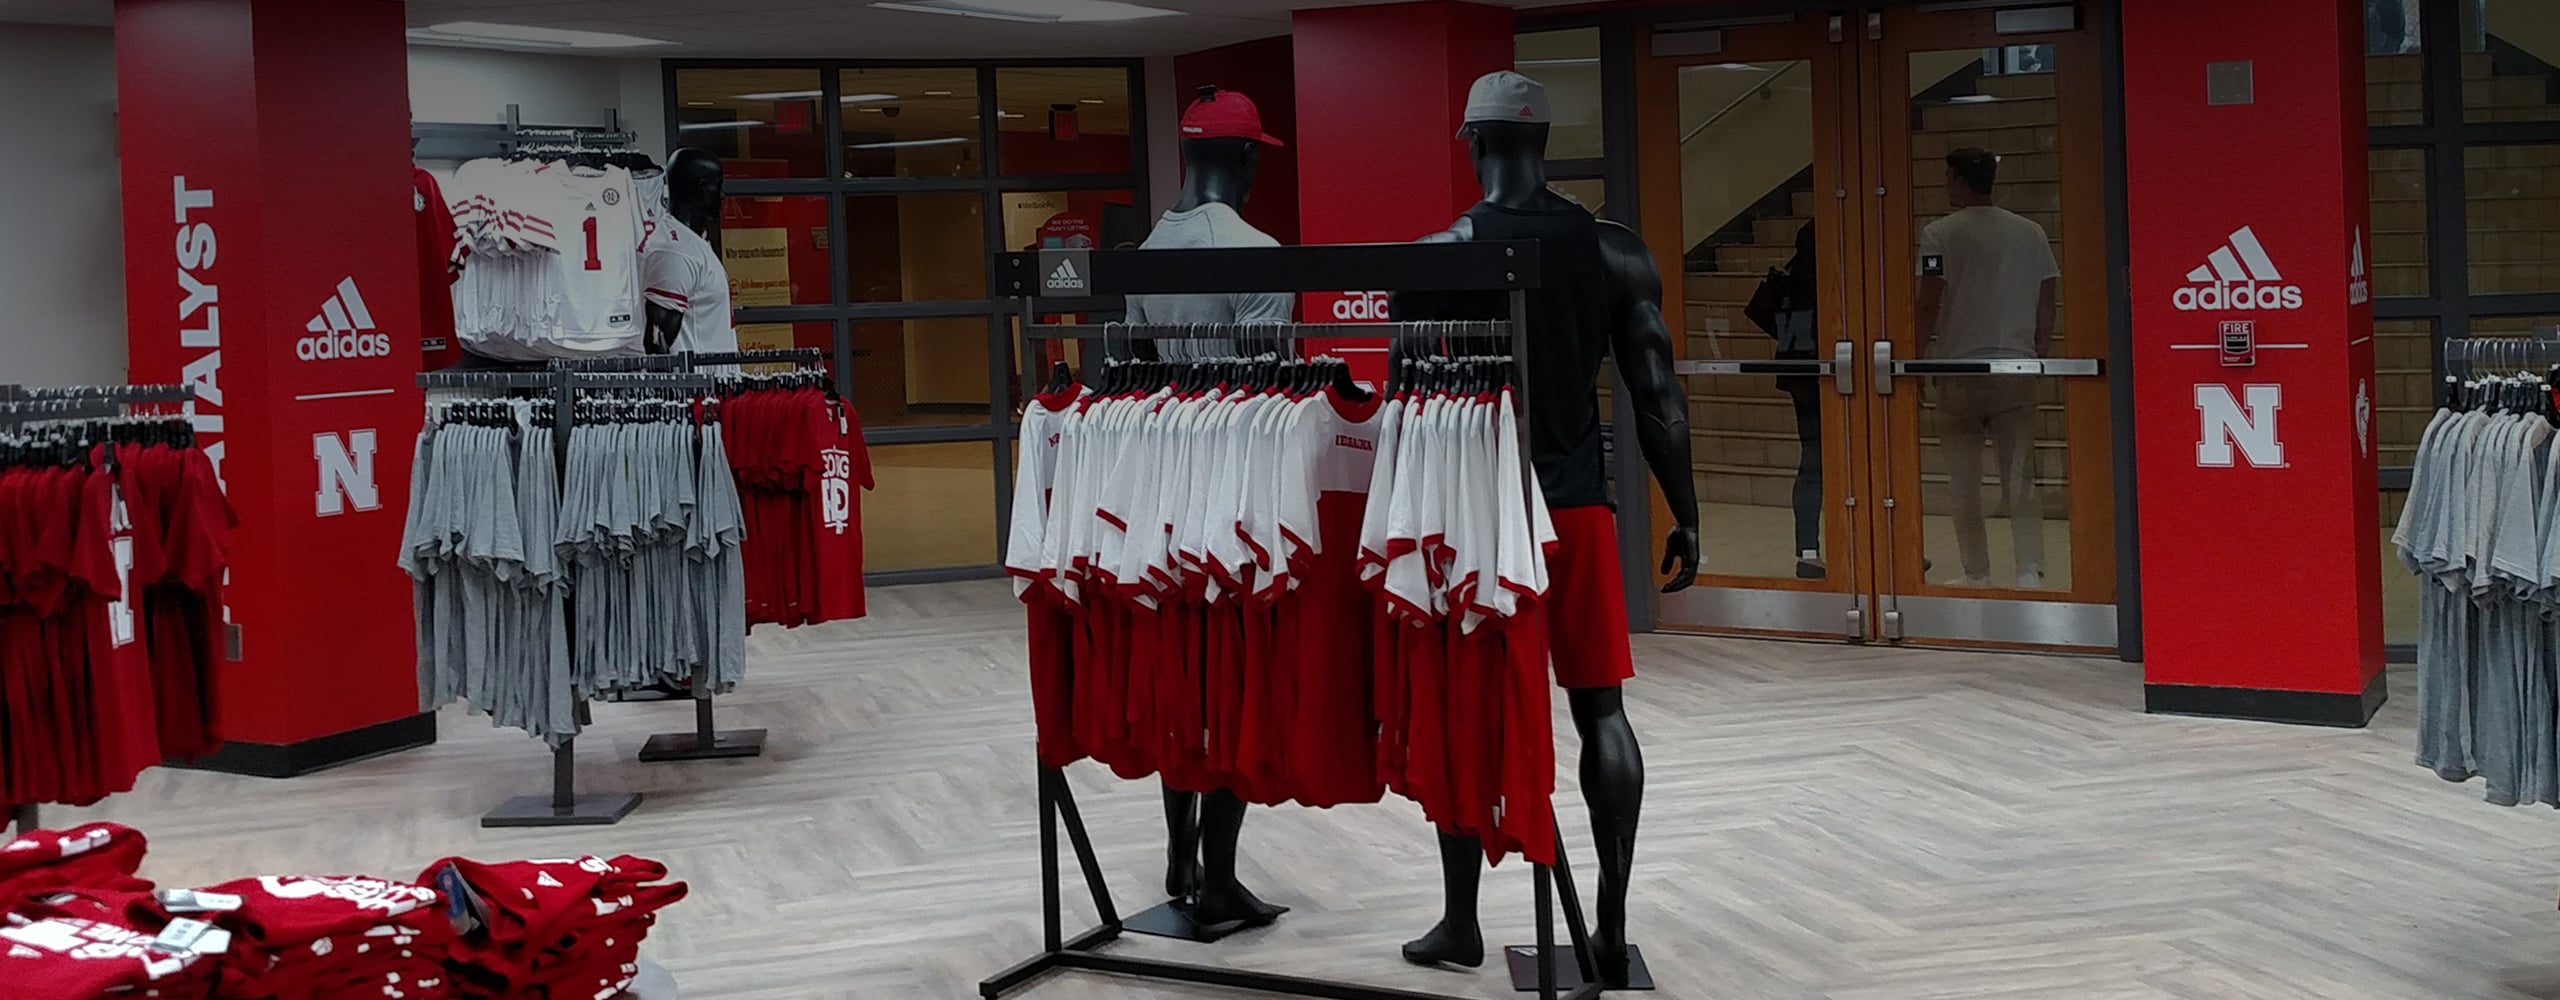 Retail environment for University of Nebraska Team Store